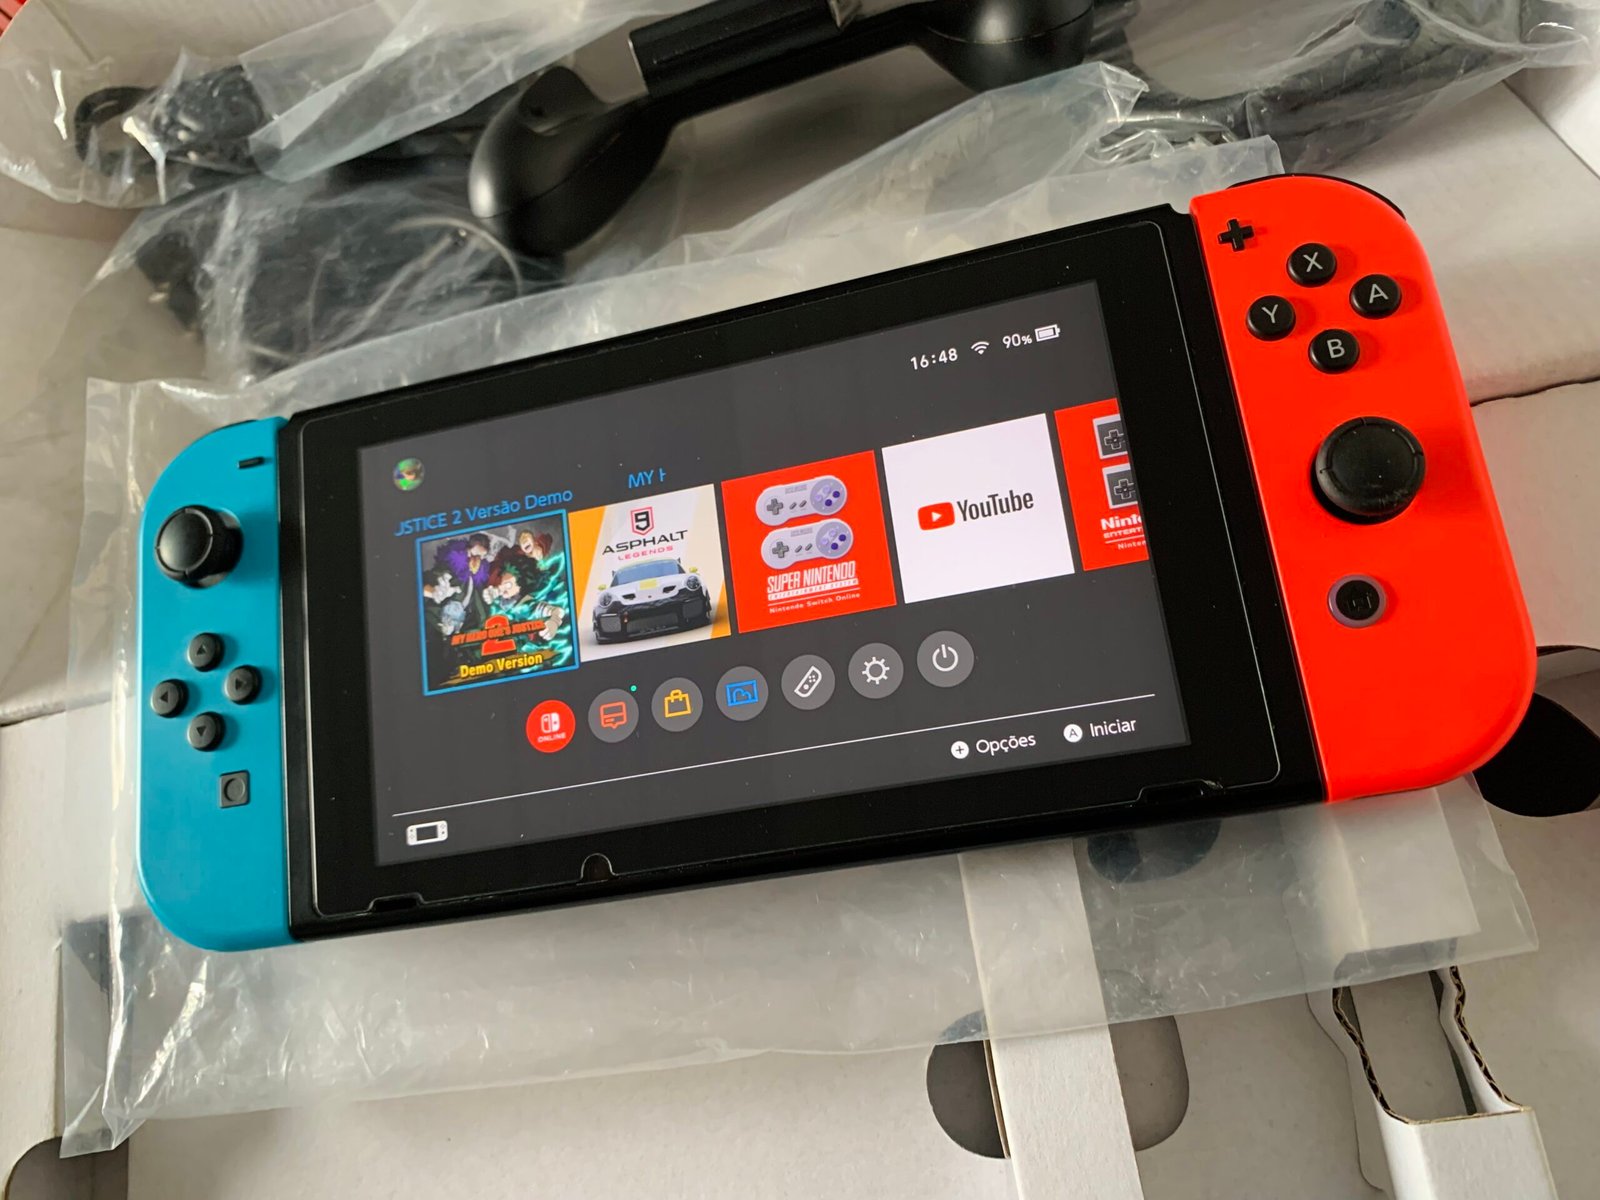 Nintendo Switch será lançado no Brasil dia 18 de setembro